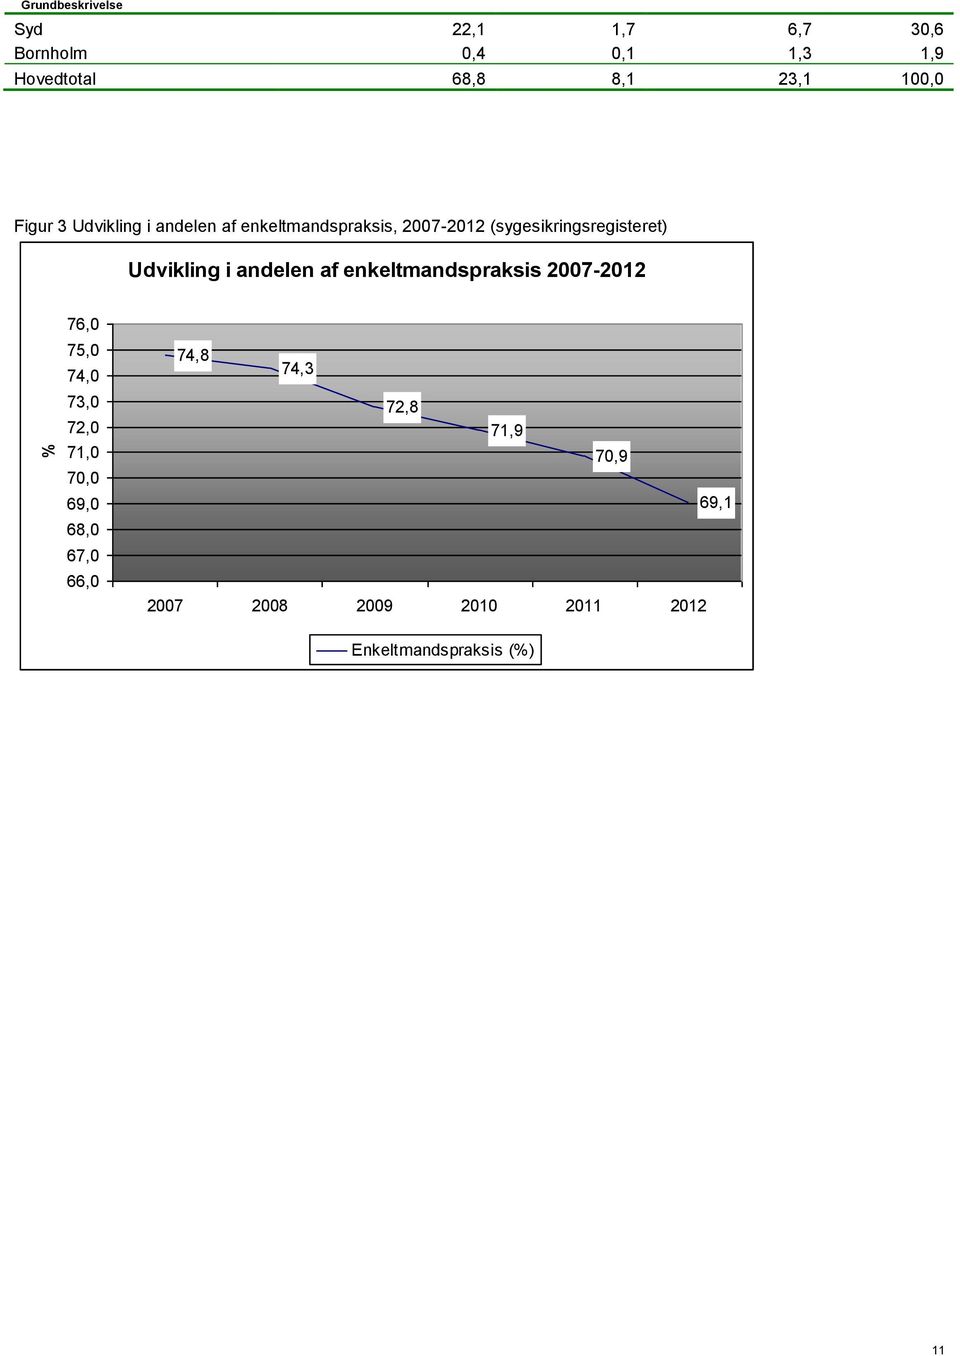 Udvikling i andelen af enkeltmandspraksis 2007-2012 76,0 75,0 74,0 73,0 72,0 71,0 70,0 69,0